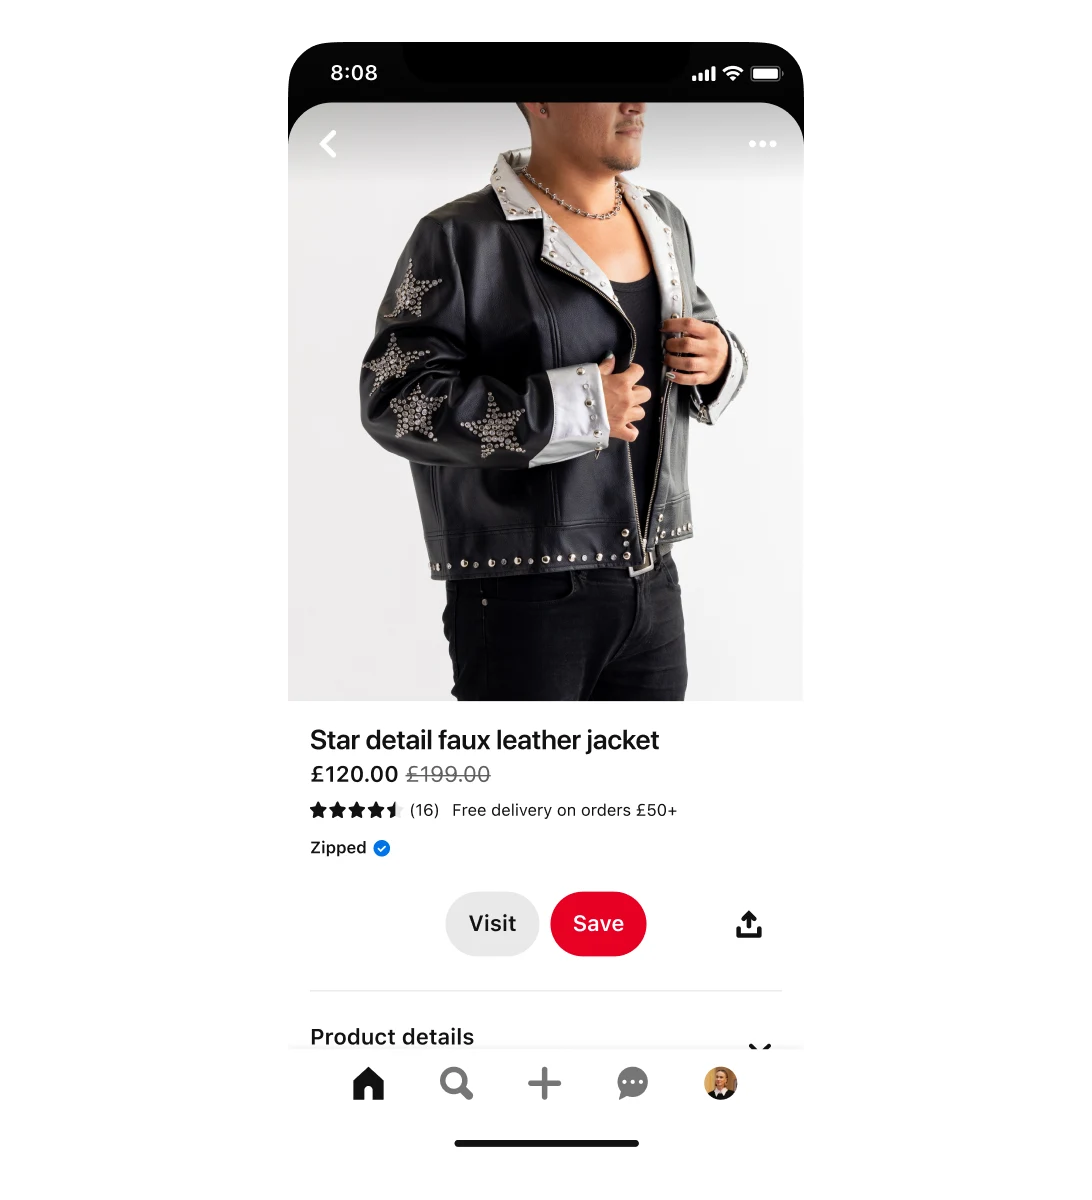 सितारों वाले डिज़ाइन के साथ नकली चमड़े की जैकेट के लिए शॉपिंग विज्ञापन का मोबाइल व्यू। जैकेट पर सेल है, इसकी कीमत $199 से घटाकर $120 की गई है। विज्ञापन में जैकेट पहने हुए एक आदमी है।